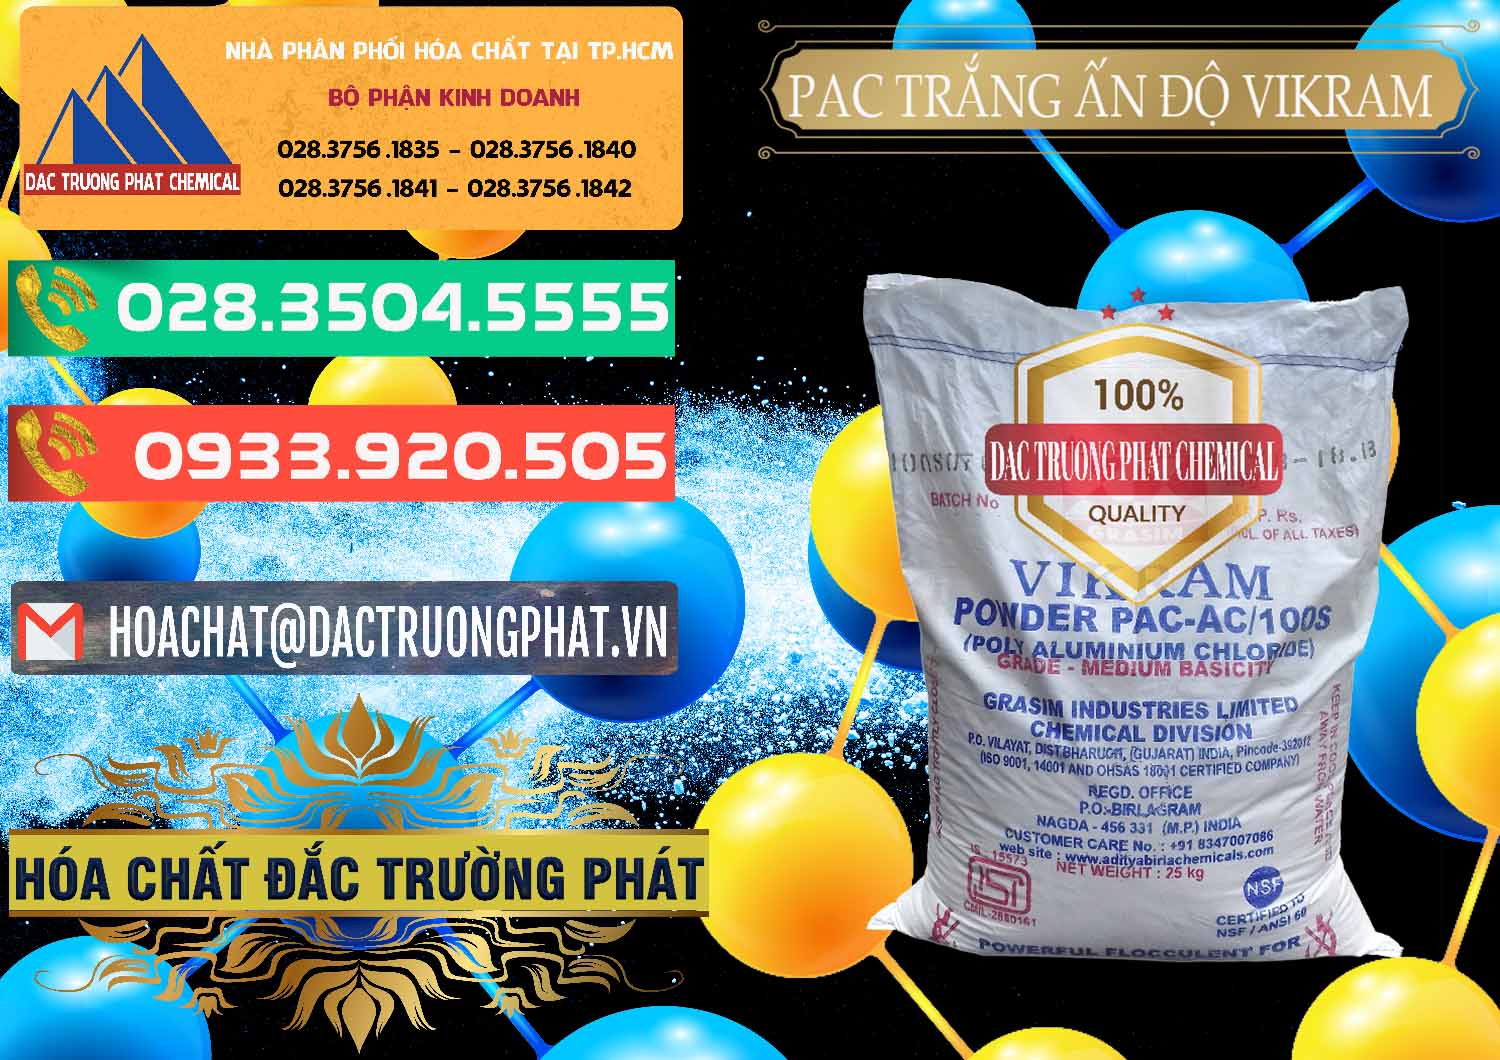 Chuyên bán và cung cấp PAC - Polyaluminium Chloride Ấn Độ India Vikram - 0120 - Nơi chuyên kinh doanh ( phân phối ) hóa chất tại TP.HCM - congtyhoachat.com.vn